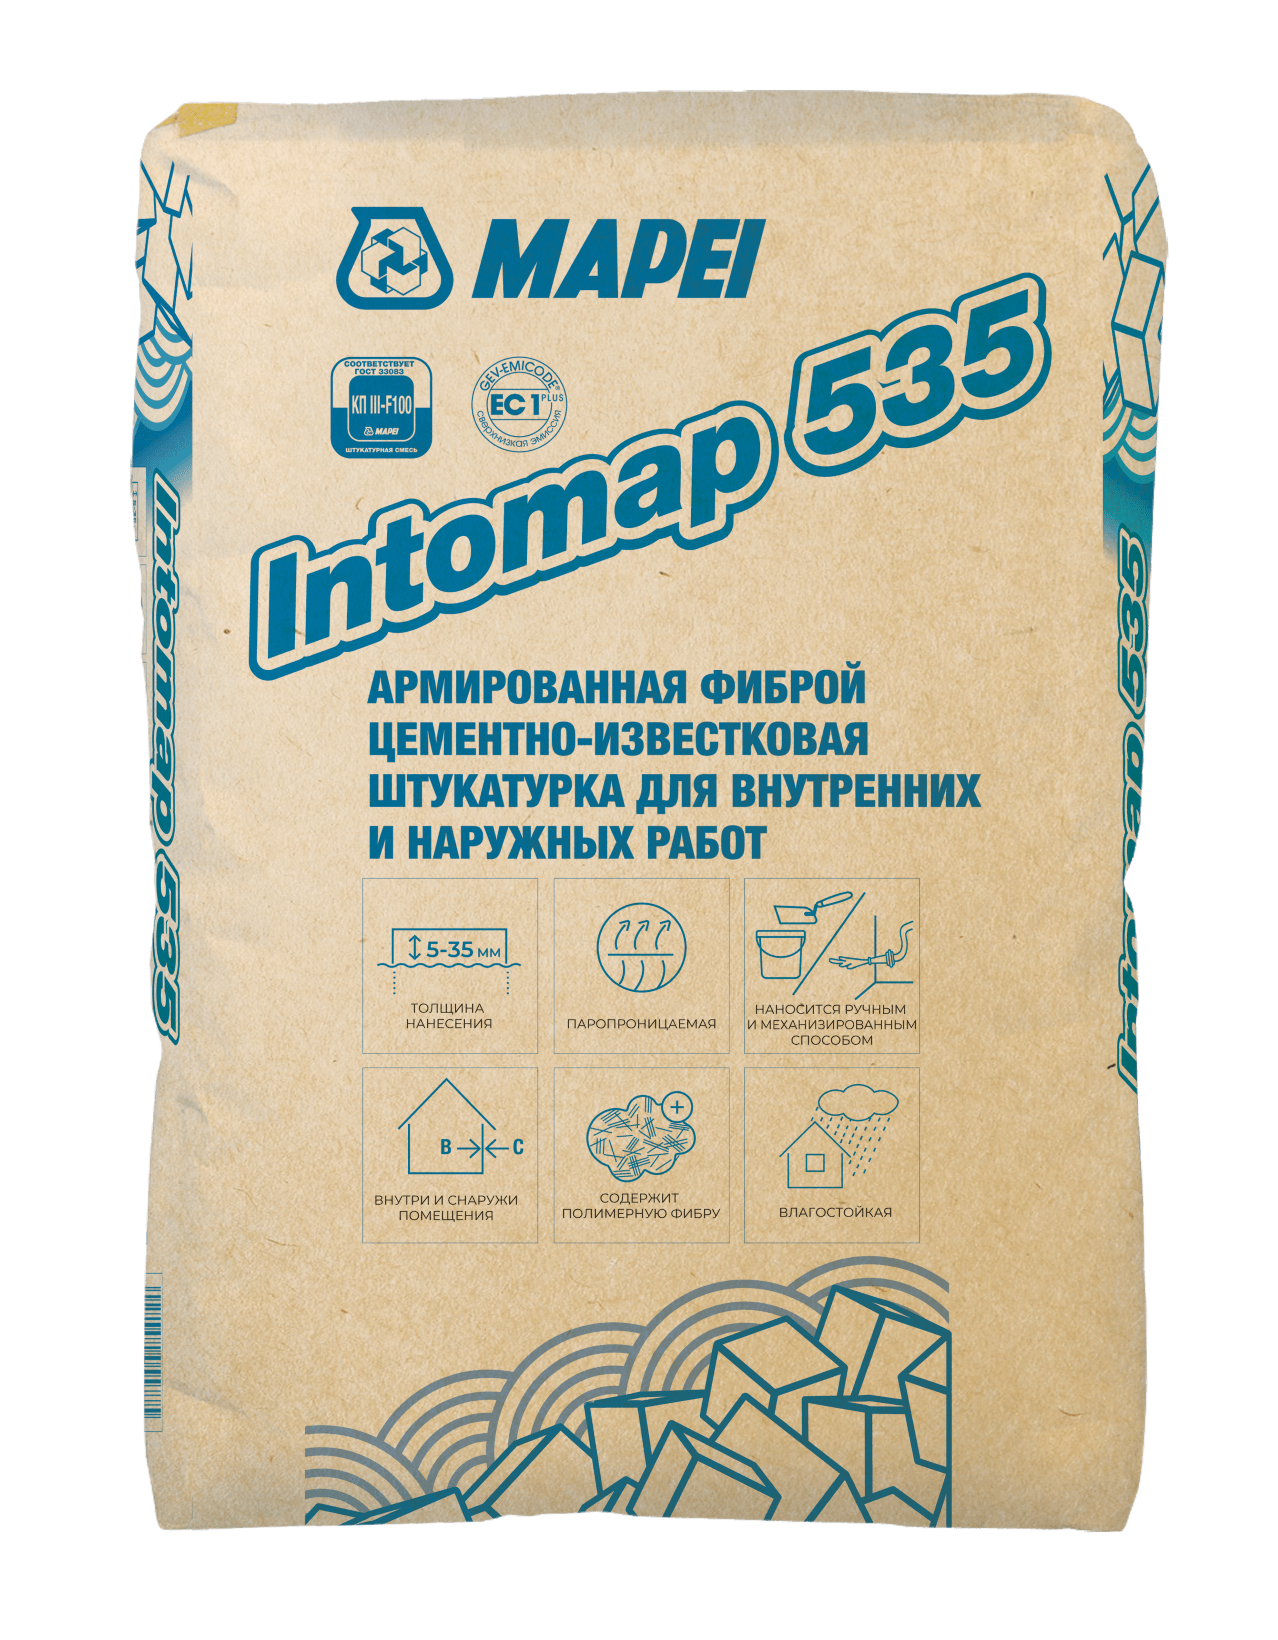 INTOMAP 535, TM MAPEI, (25кг), (Россия), Смесь сухая штукатурная тяжёлая для внутренних и наружных работ класс КП III F 100 для механизированного и ручного нанесения